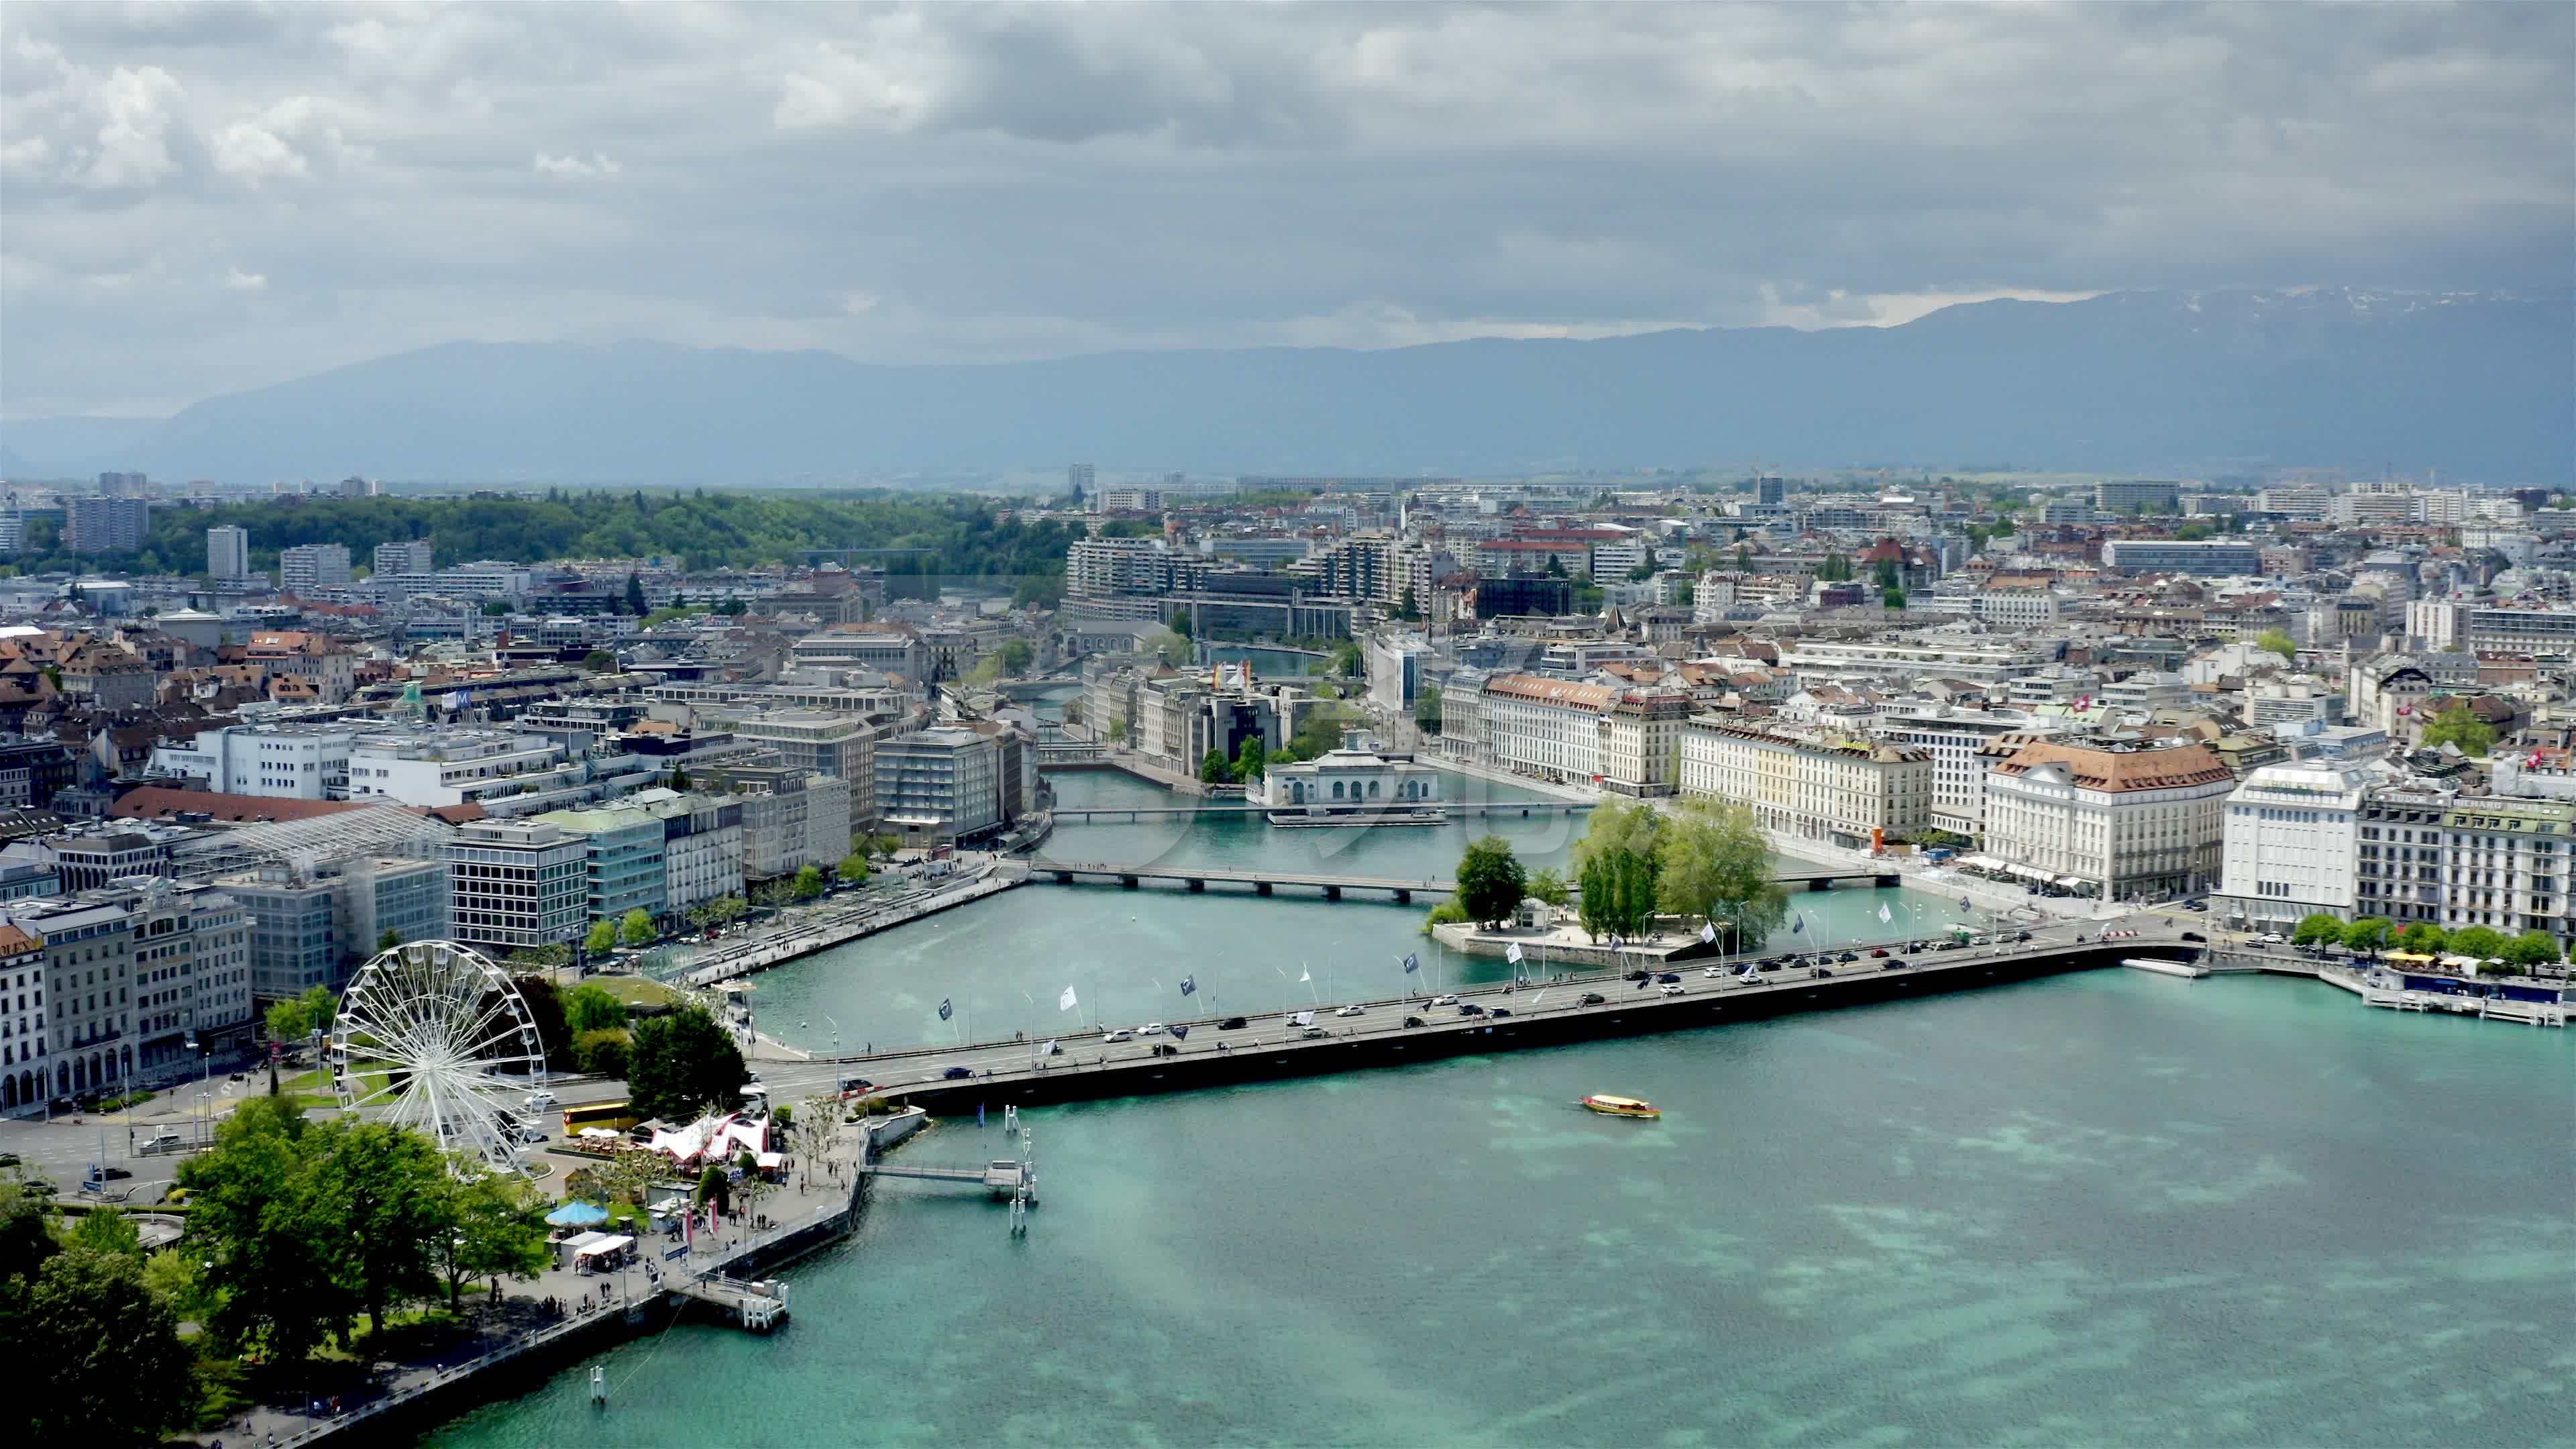 【携程攻略】日内瓦日内瓦湖景点,在瑞士看到的最美丽的湖之一，湖水是蓝绿色的。沿湖有许多小城镇，洛…